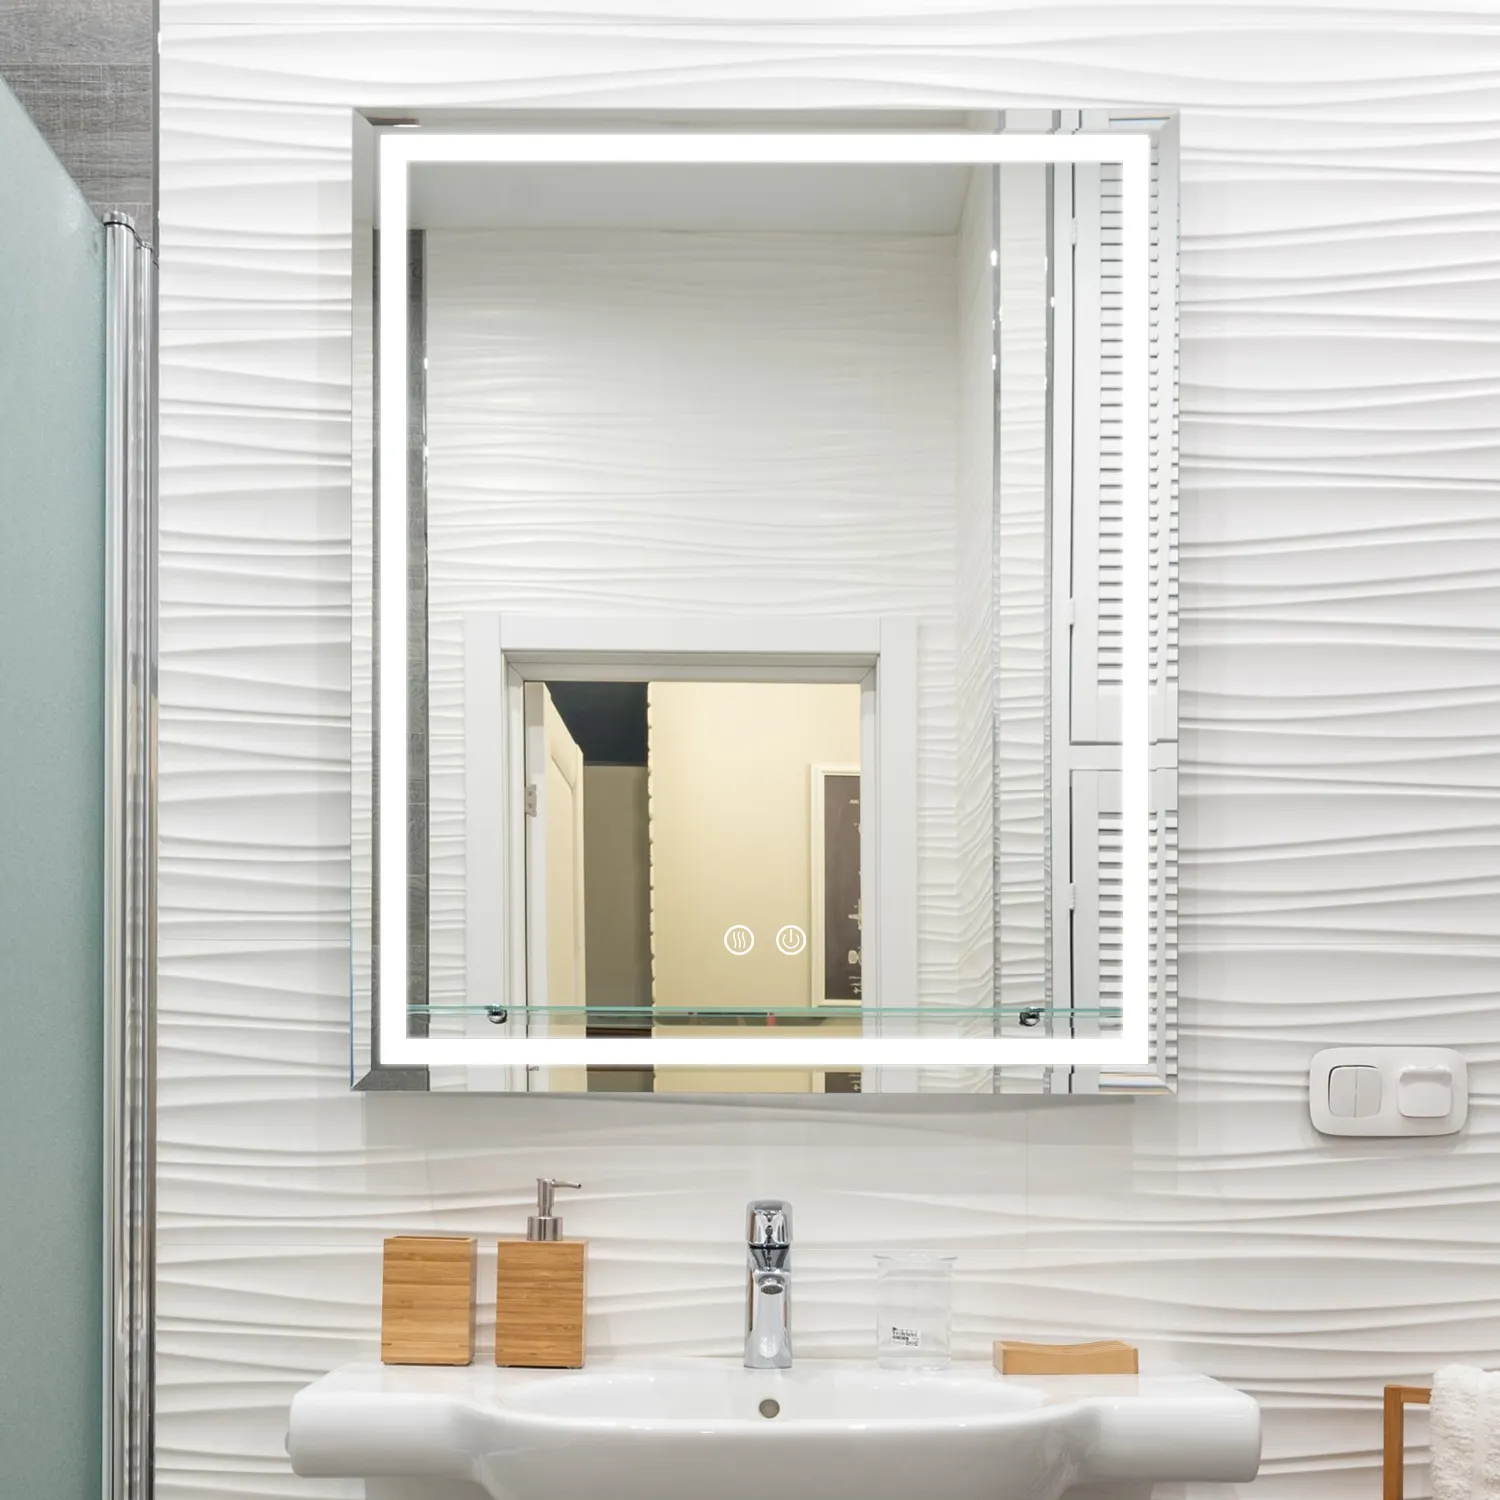 MIRO touch screen retroilluminato led specchietti da bagno smart antifog vanità a parete rettangolare in vetro specchio da bagno con luce a led